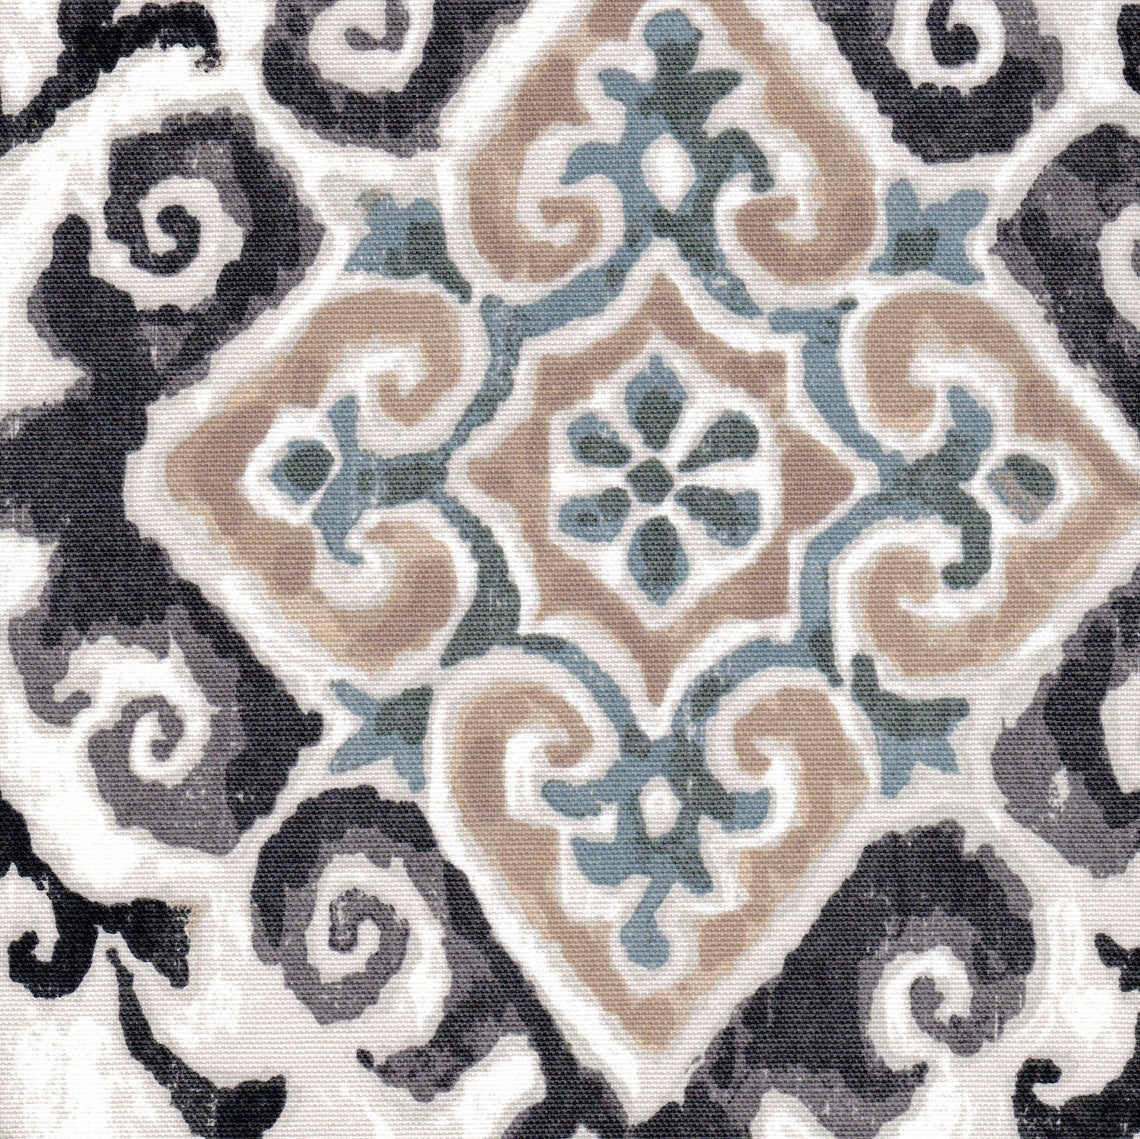 duvet cover in feabhra slate gray diamond medallion- blue, tan, large scale